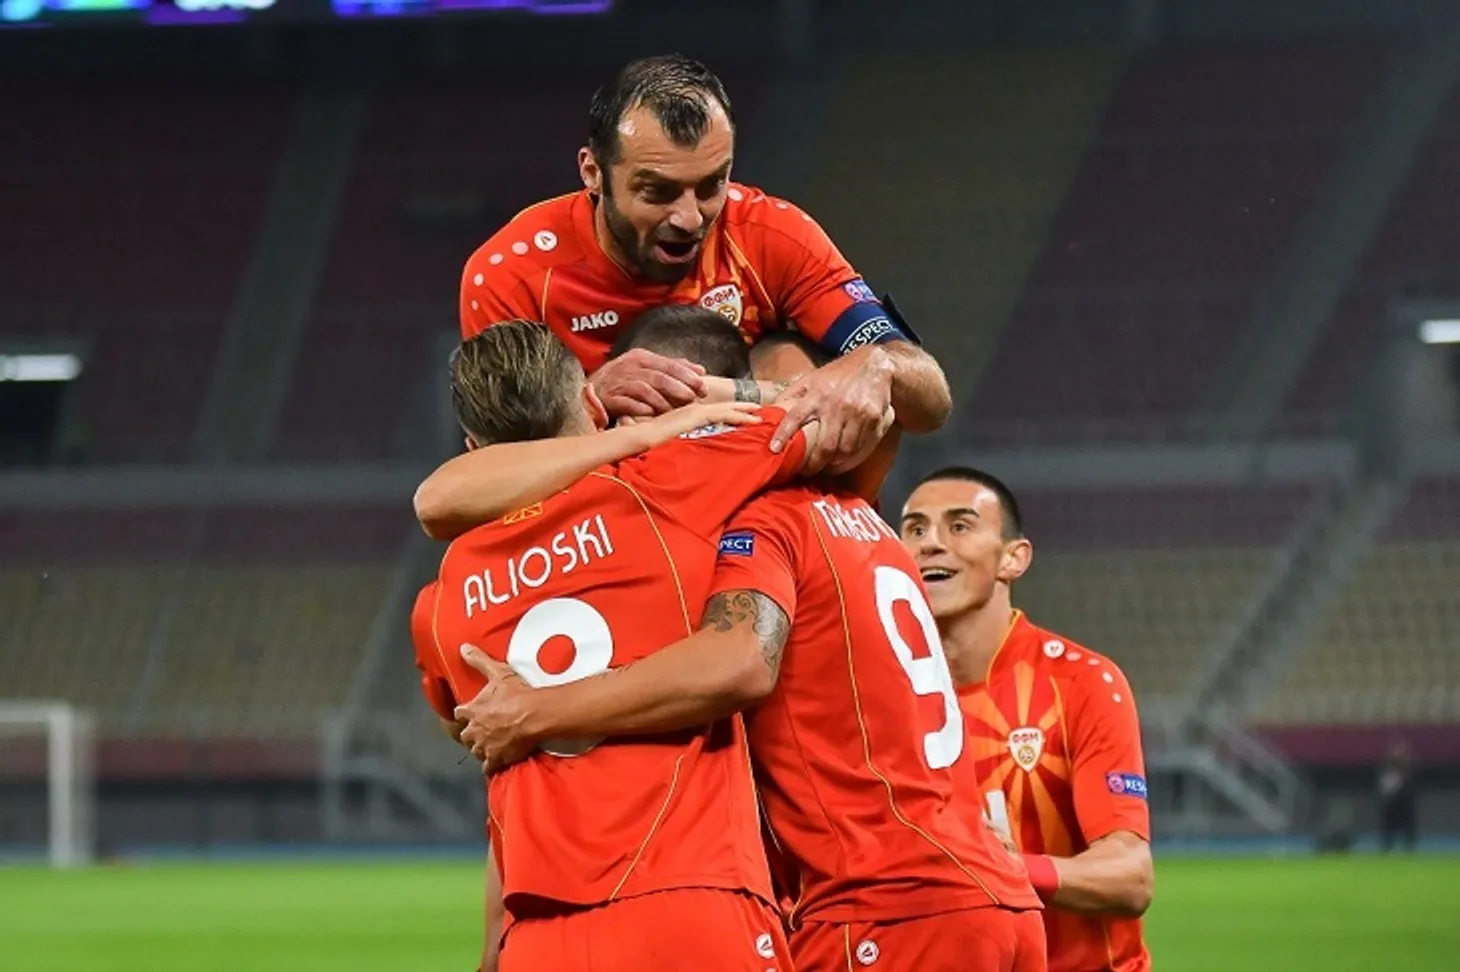 Пандєв дебютував за збірну Північної Македонії 20 років тому. А зараз забив перший гол своєї країни на Євро